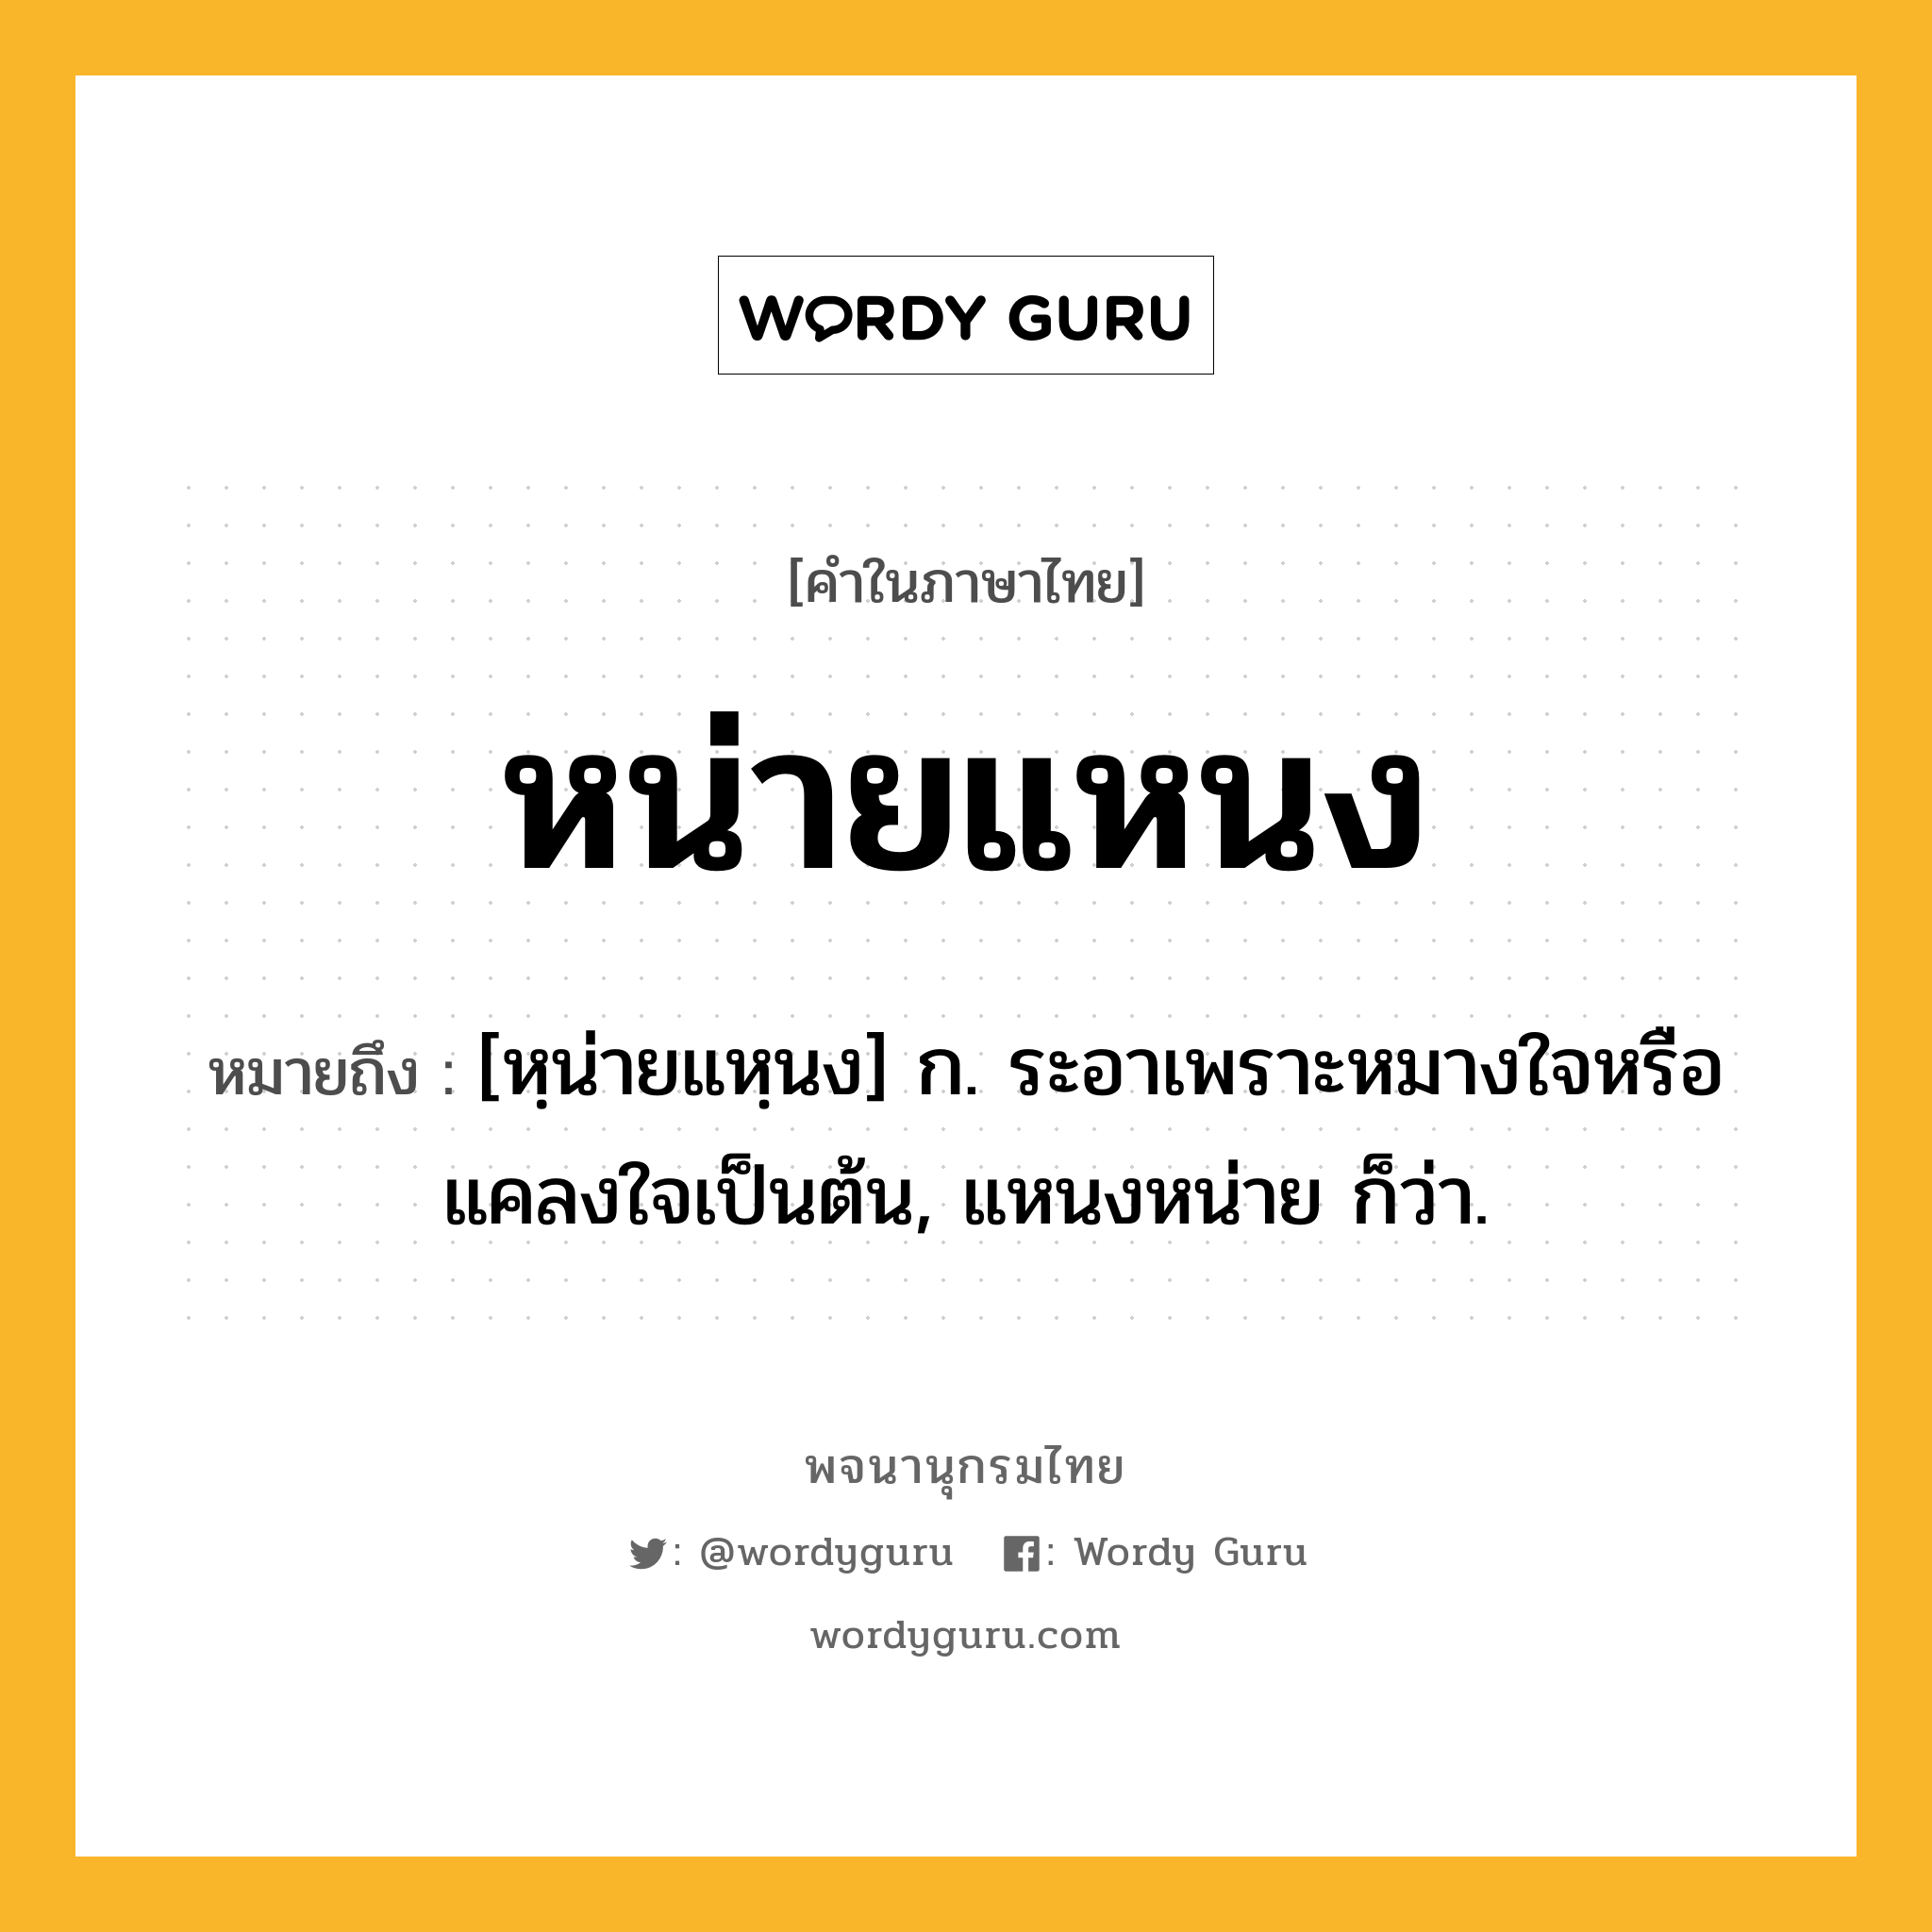 หน่ายแหนง หมายถึงอะไร?, คำในภาษาไทย หน่ายแหนง หมายถึง [หฺน่ายแหฺนง] ก. ระอาเพราะหมางใจหรือแคลงใจเป็นต้น, แหนงหน่าย ก็ว่า.